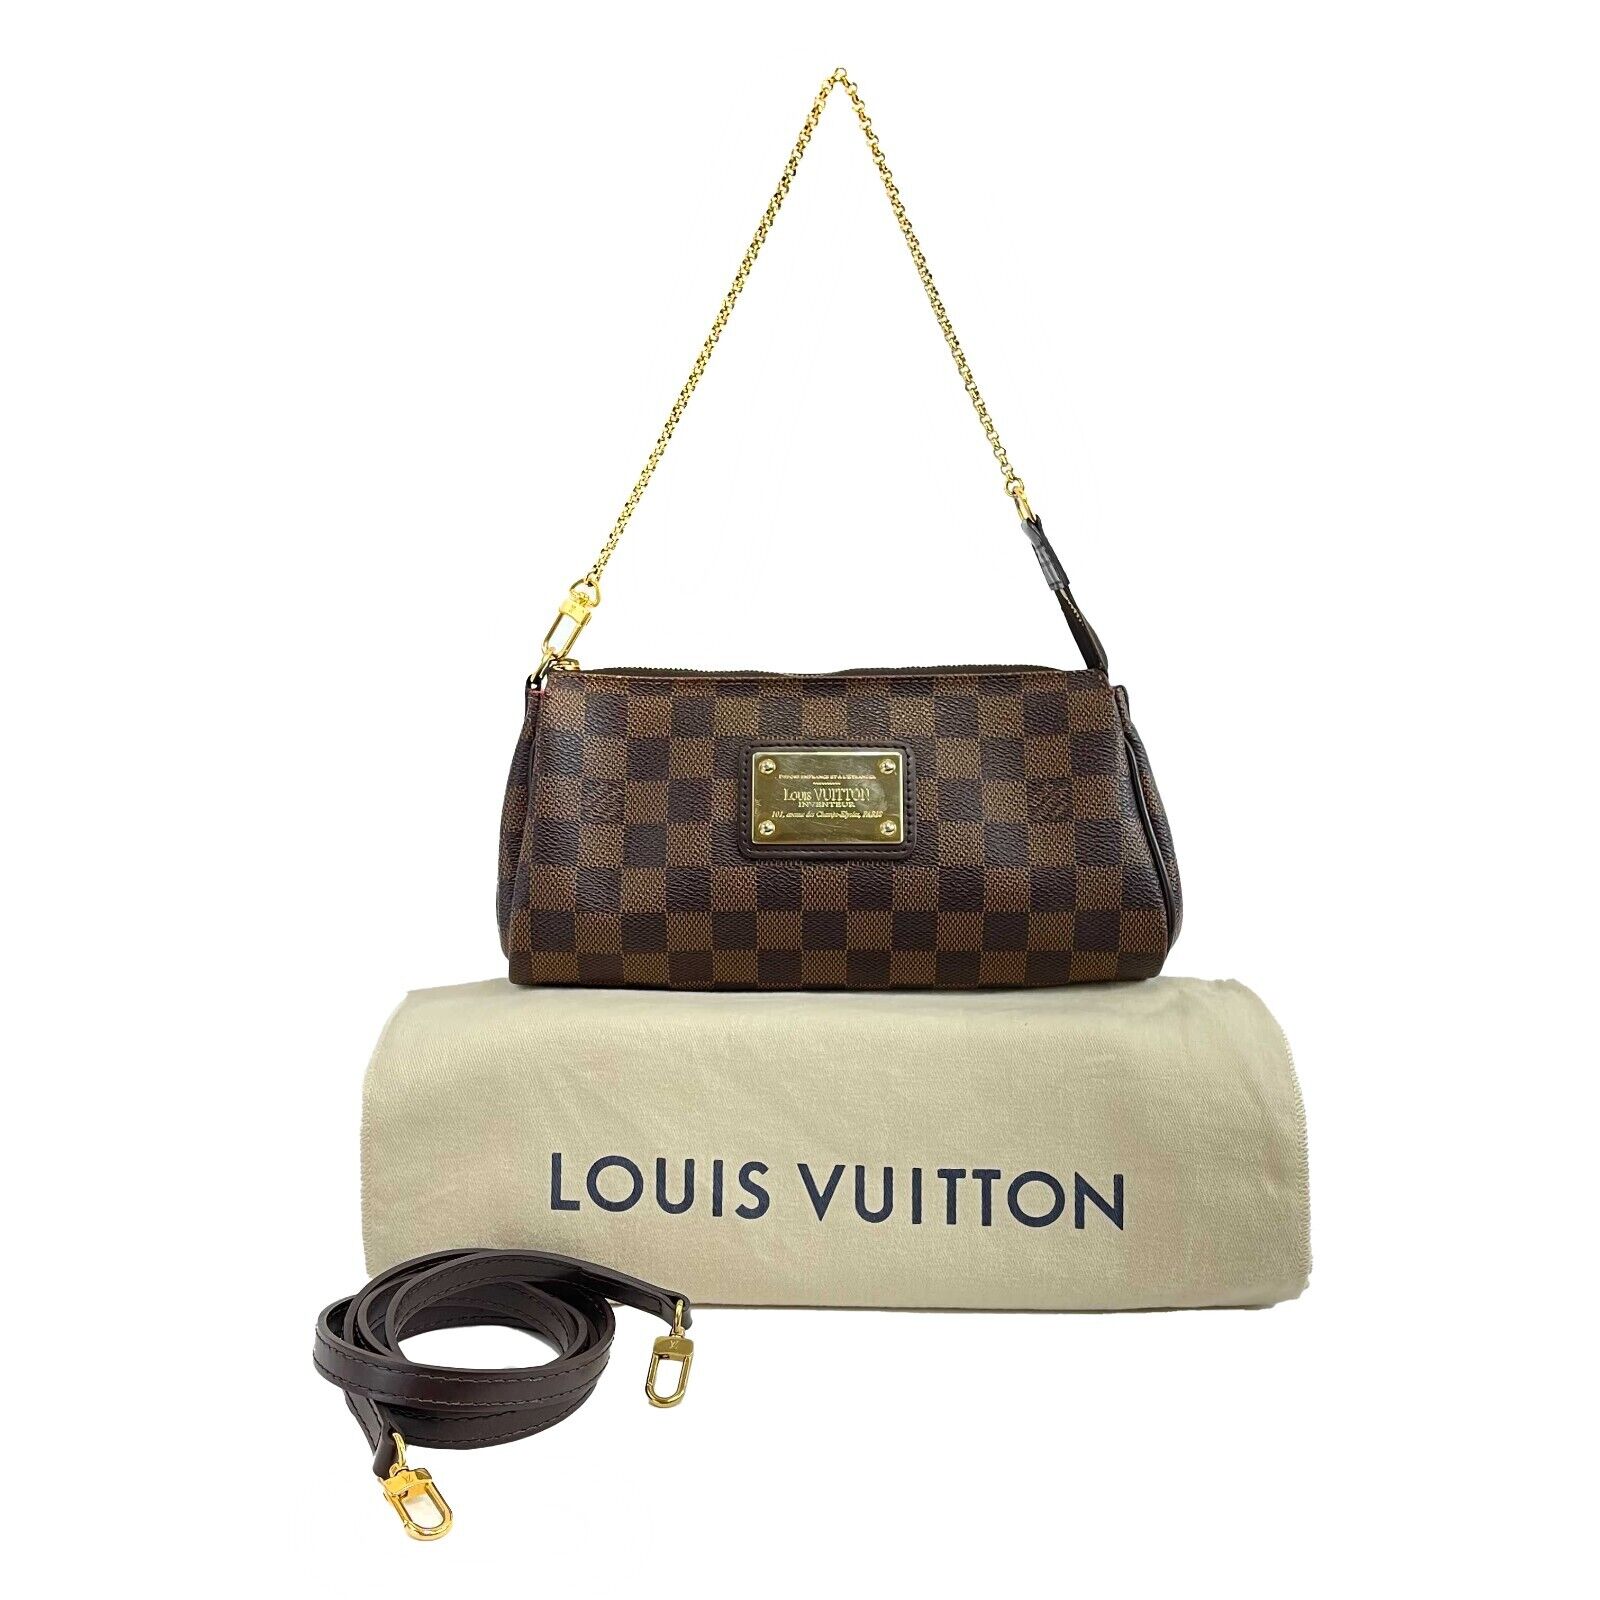 louis vuitton handbag with chain strap